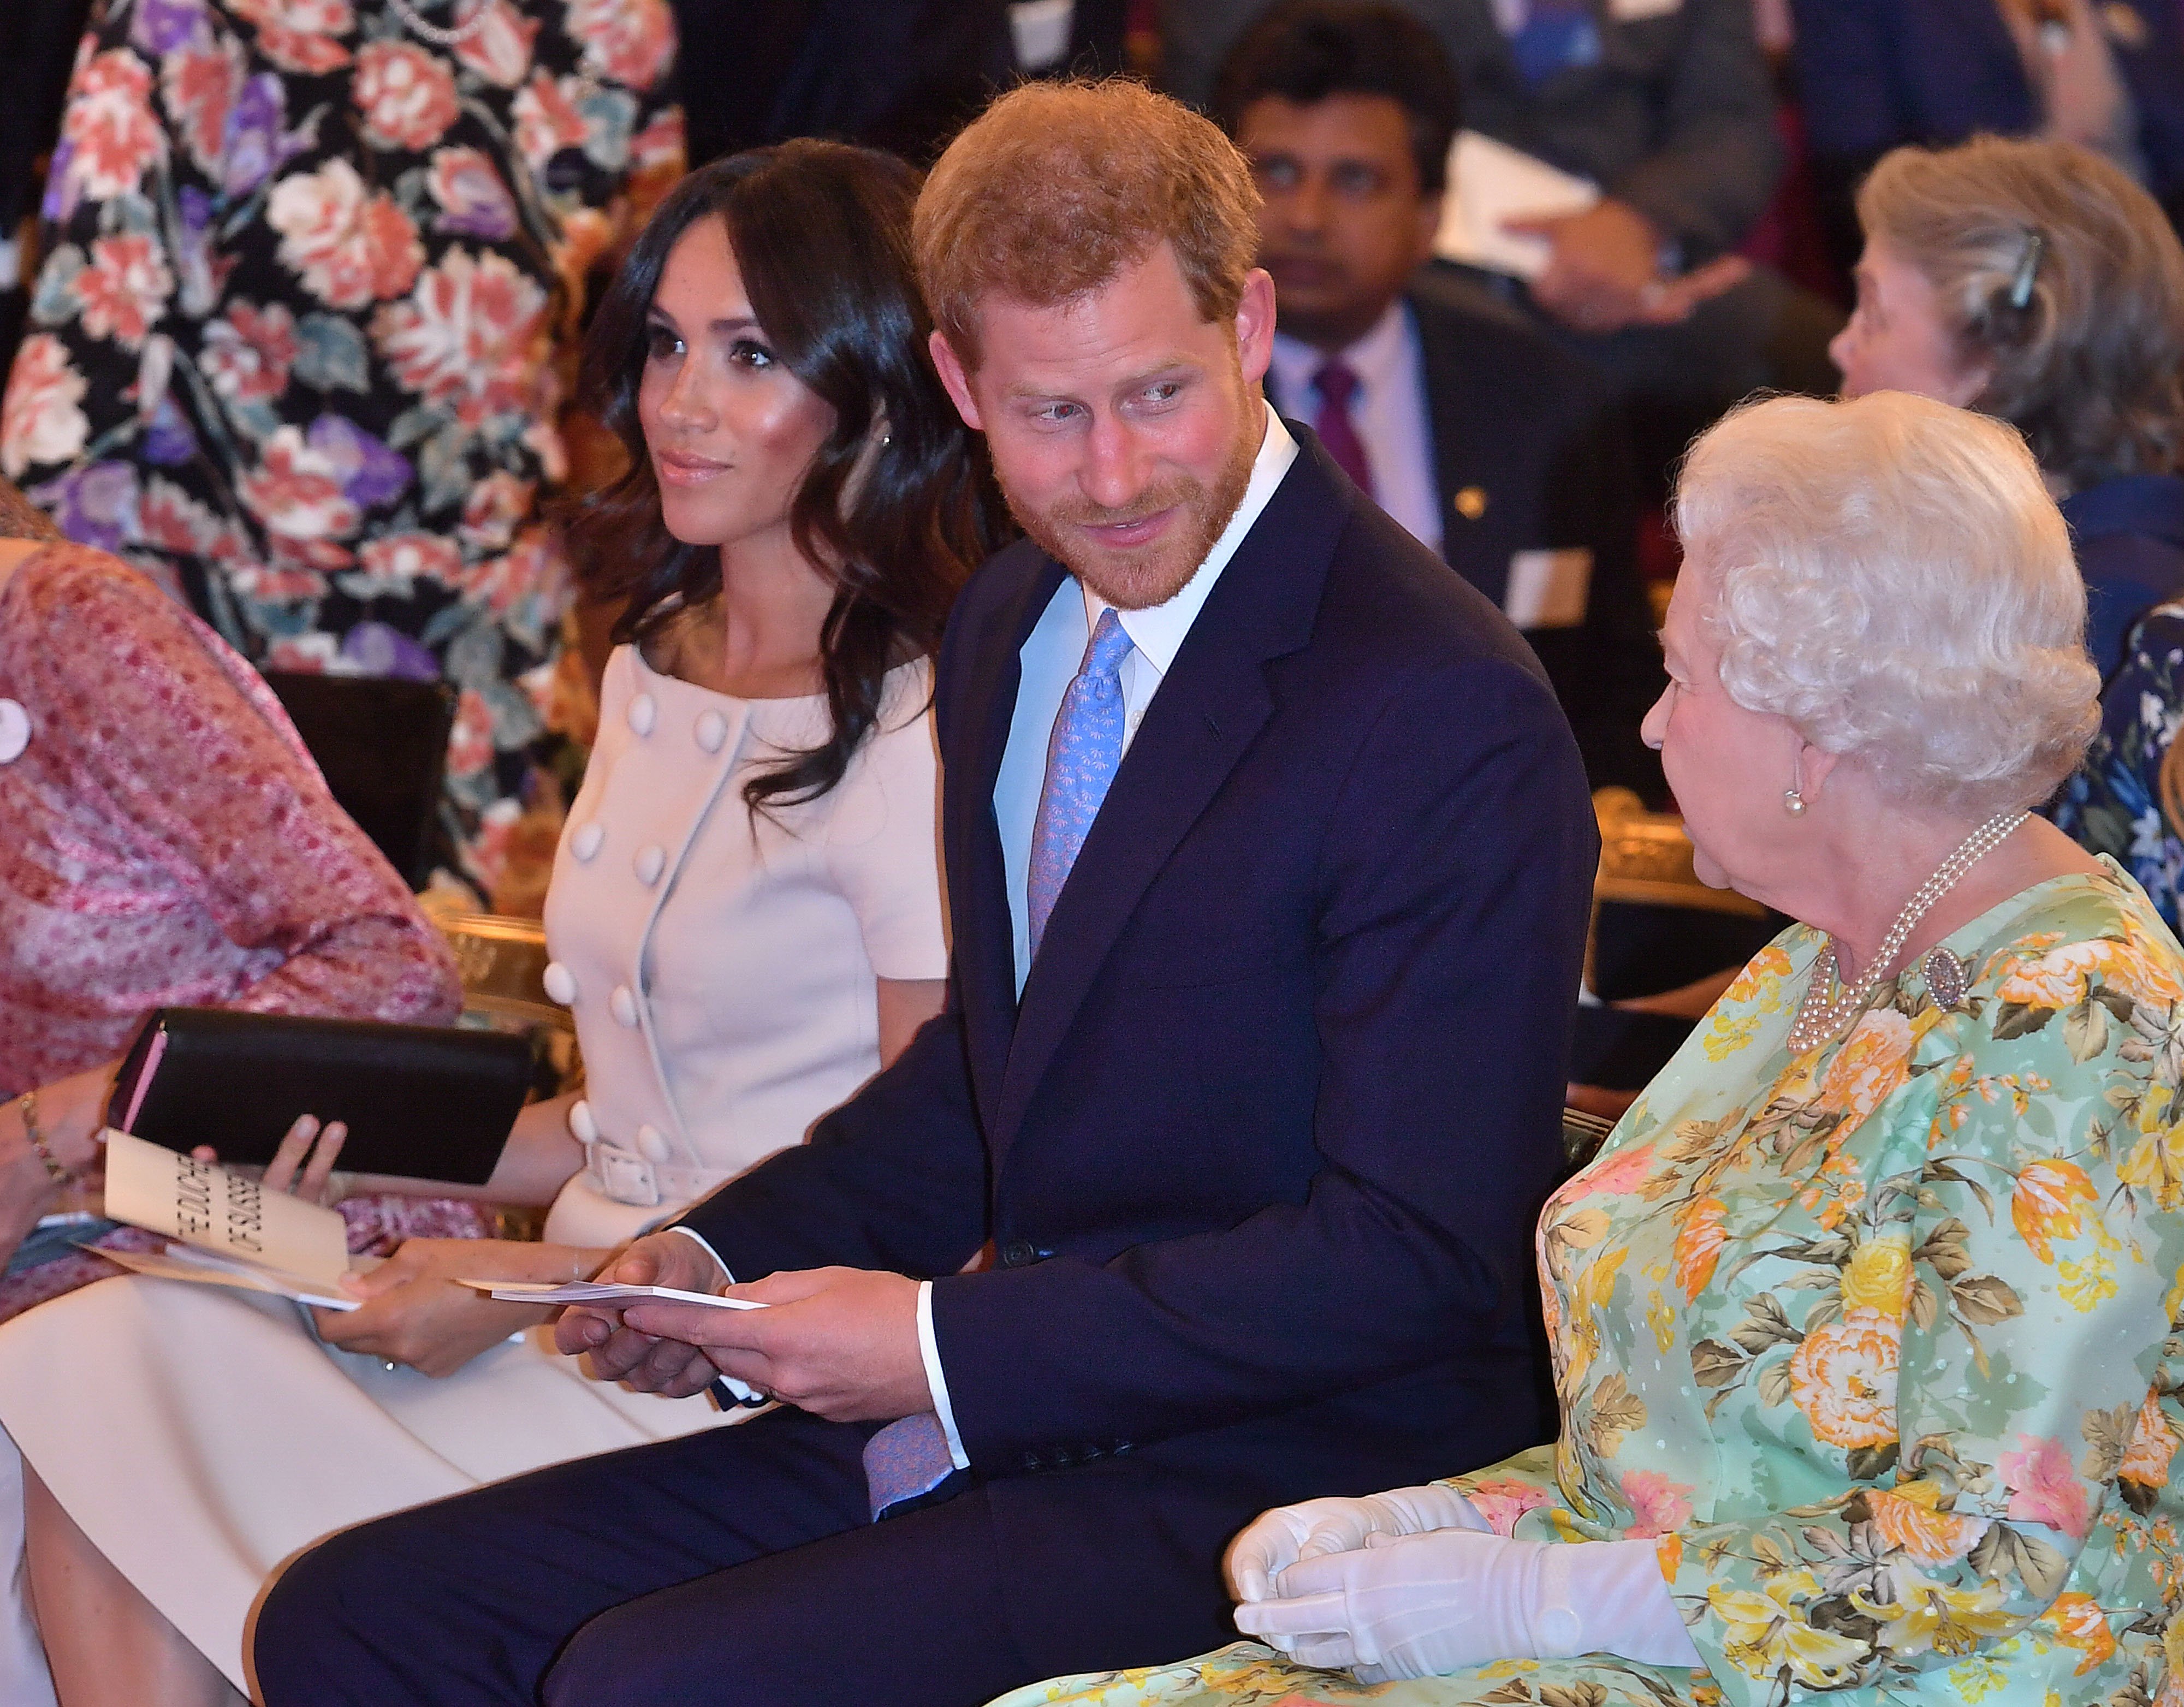 La reina Elizabeth II con el príncipe Harry, duque de Sussex y Meghan, duquesa de Sussex, en la ceremonia de entrega de premios Queen's Young Leaders en el palacio de Buckingham, el 26 de junio de 2018 en Londres, Inglaterra. | Foto: Getty Images